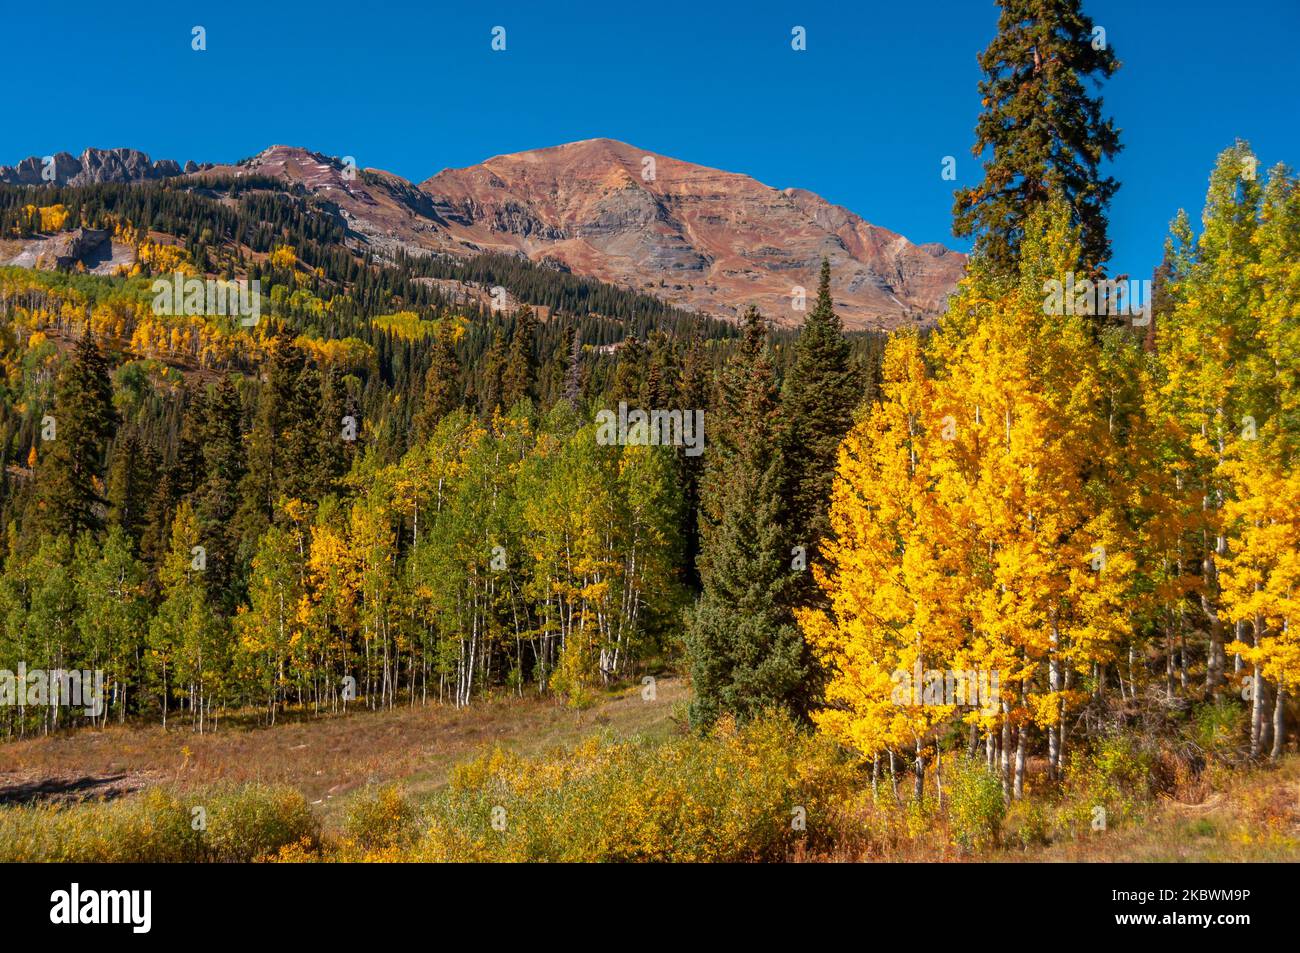 Gli splendidi aspidi dorati aggiungono un'occhiata drammatica a ogni scena montuosa del Colorado incontrata in un tour autunnale delle montagne vicino a Crested Butte. Foto Stock